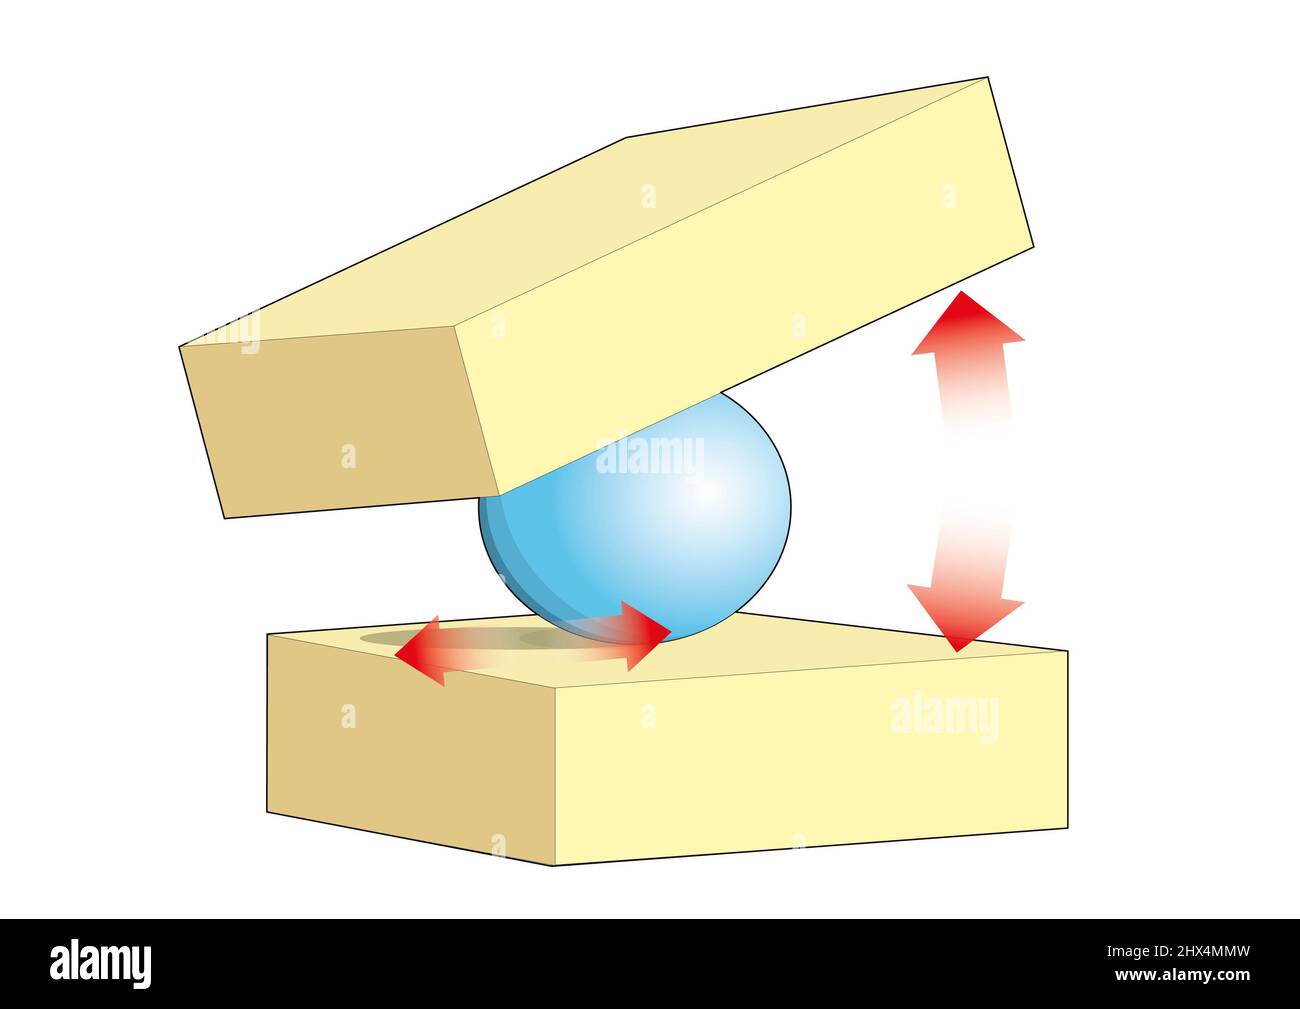 Comment le disque permet le mouvement, illustrant les vertèbres et le noyau pulposus Banque D'Images